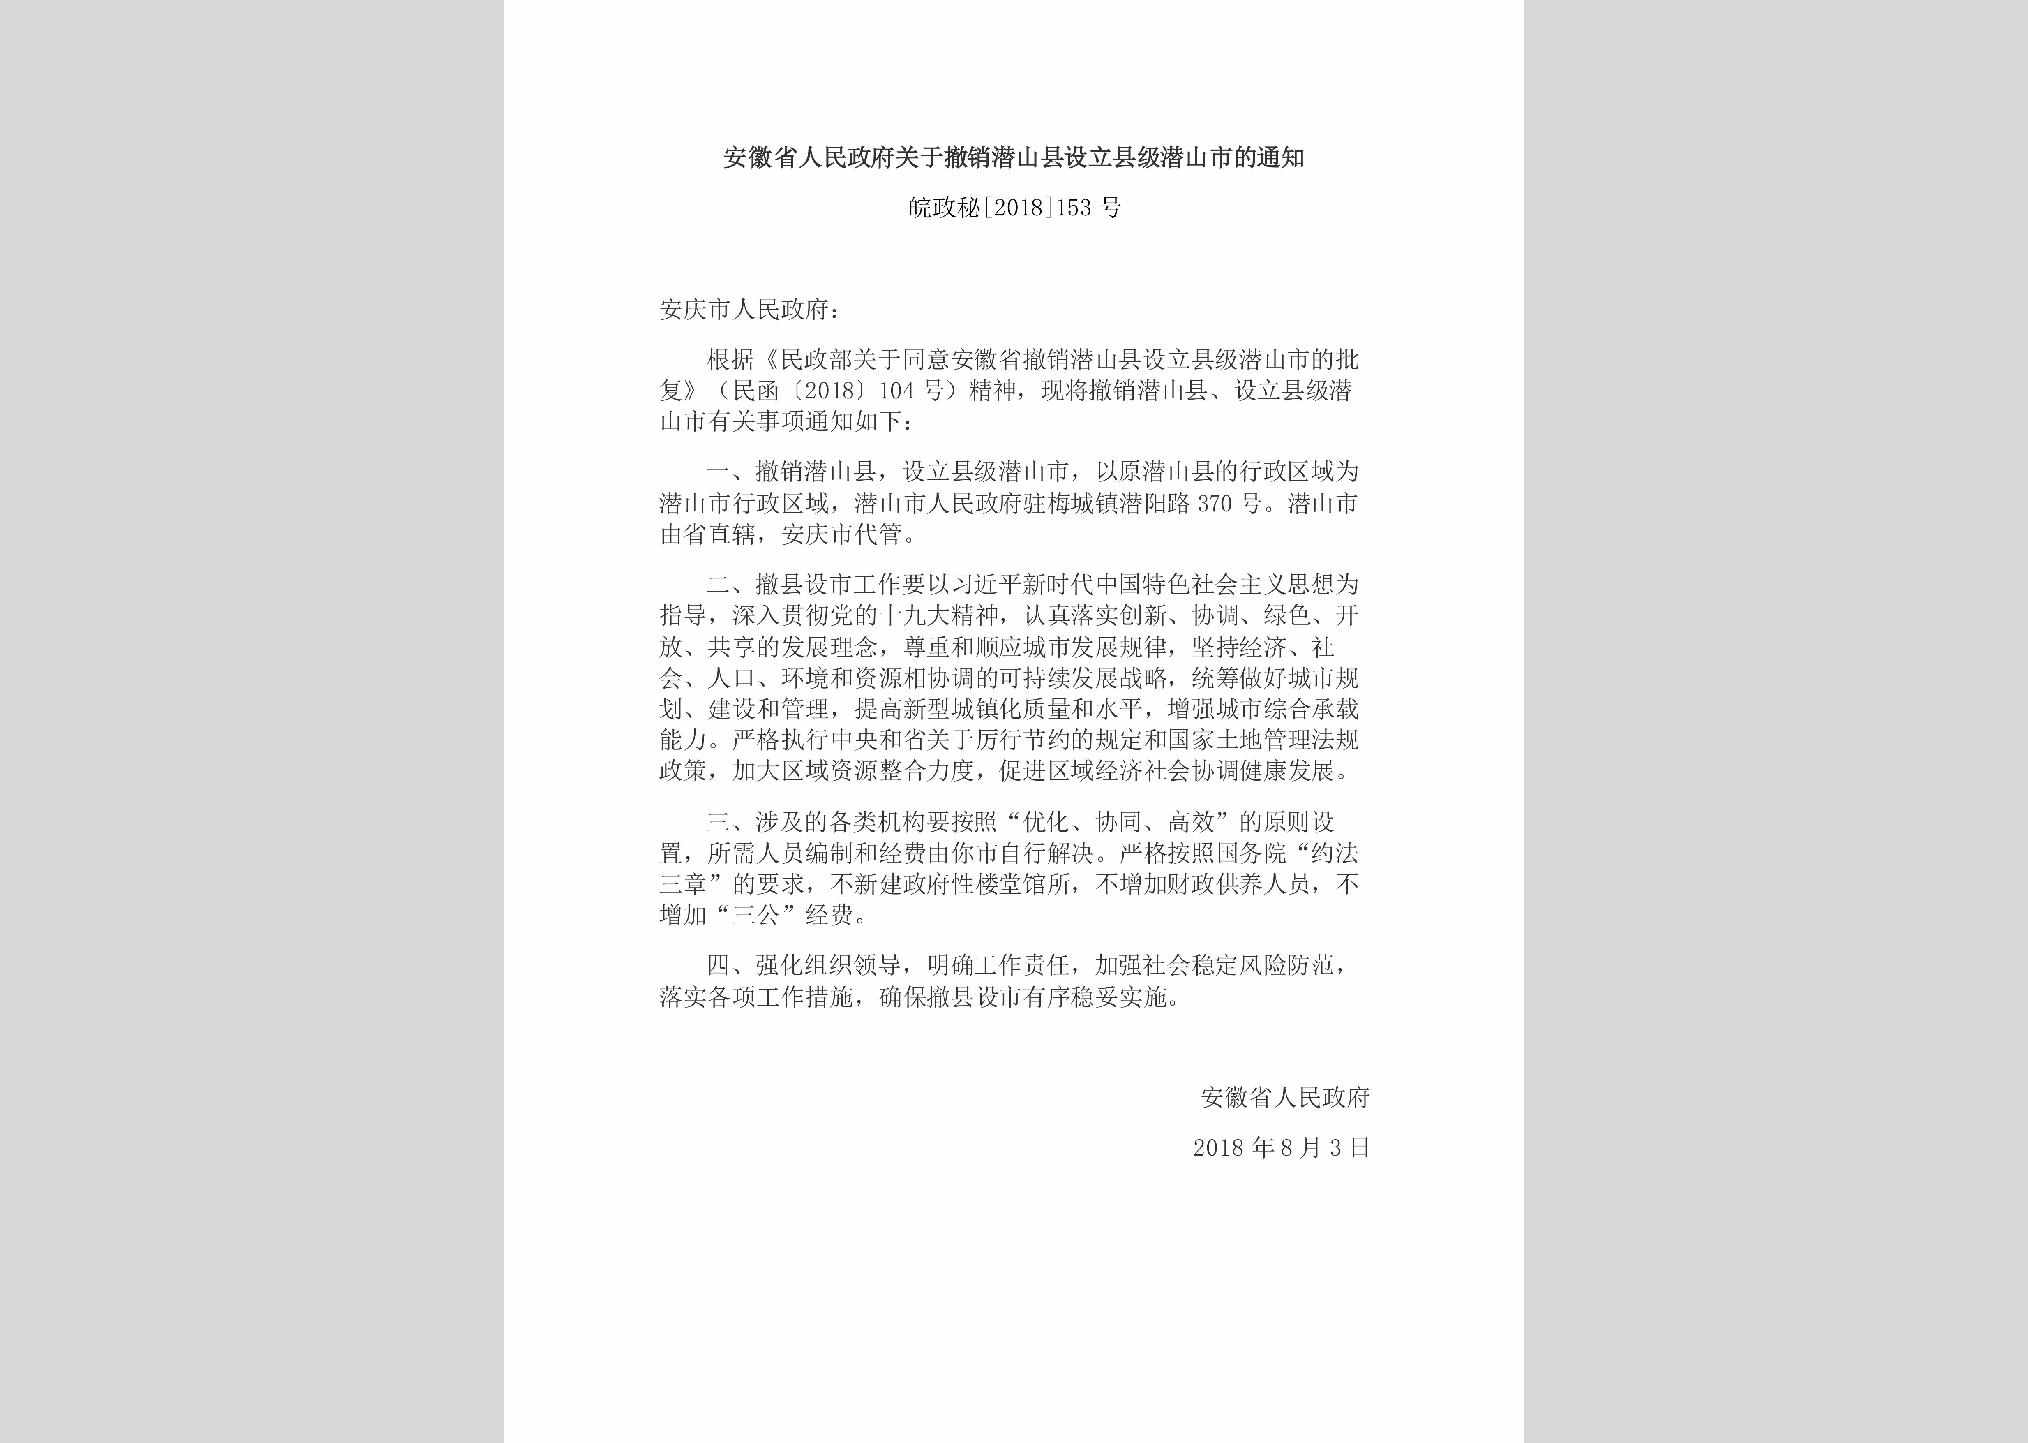 皖政秘[2018]153号：安徽省人民政府关于撤销潜山县设立县级潜山市的通知